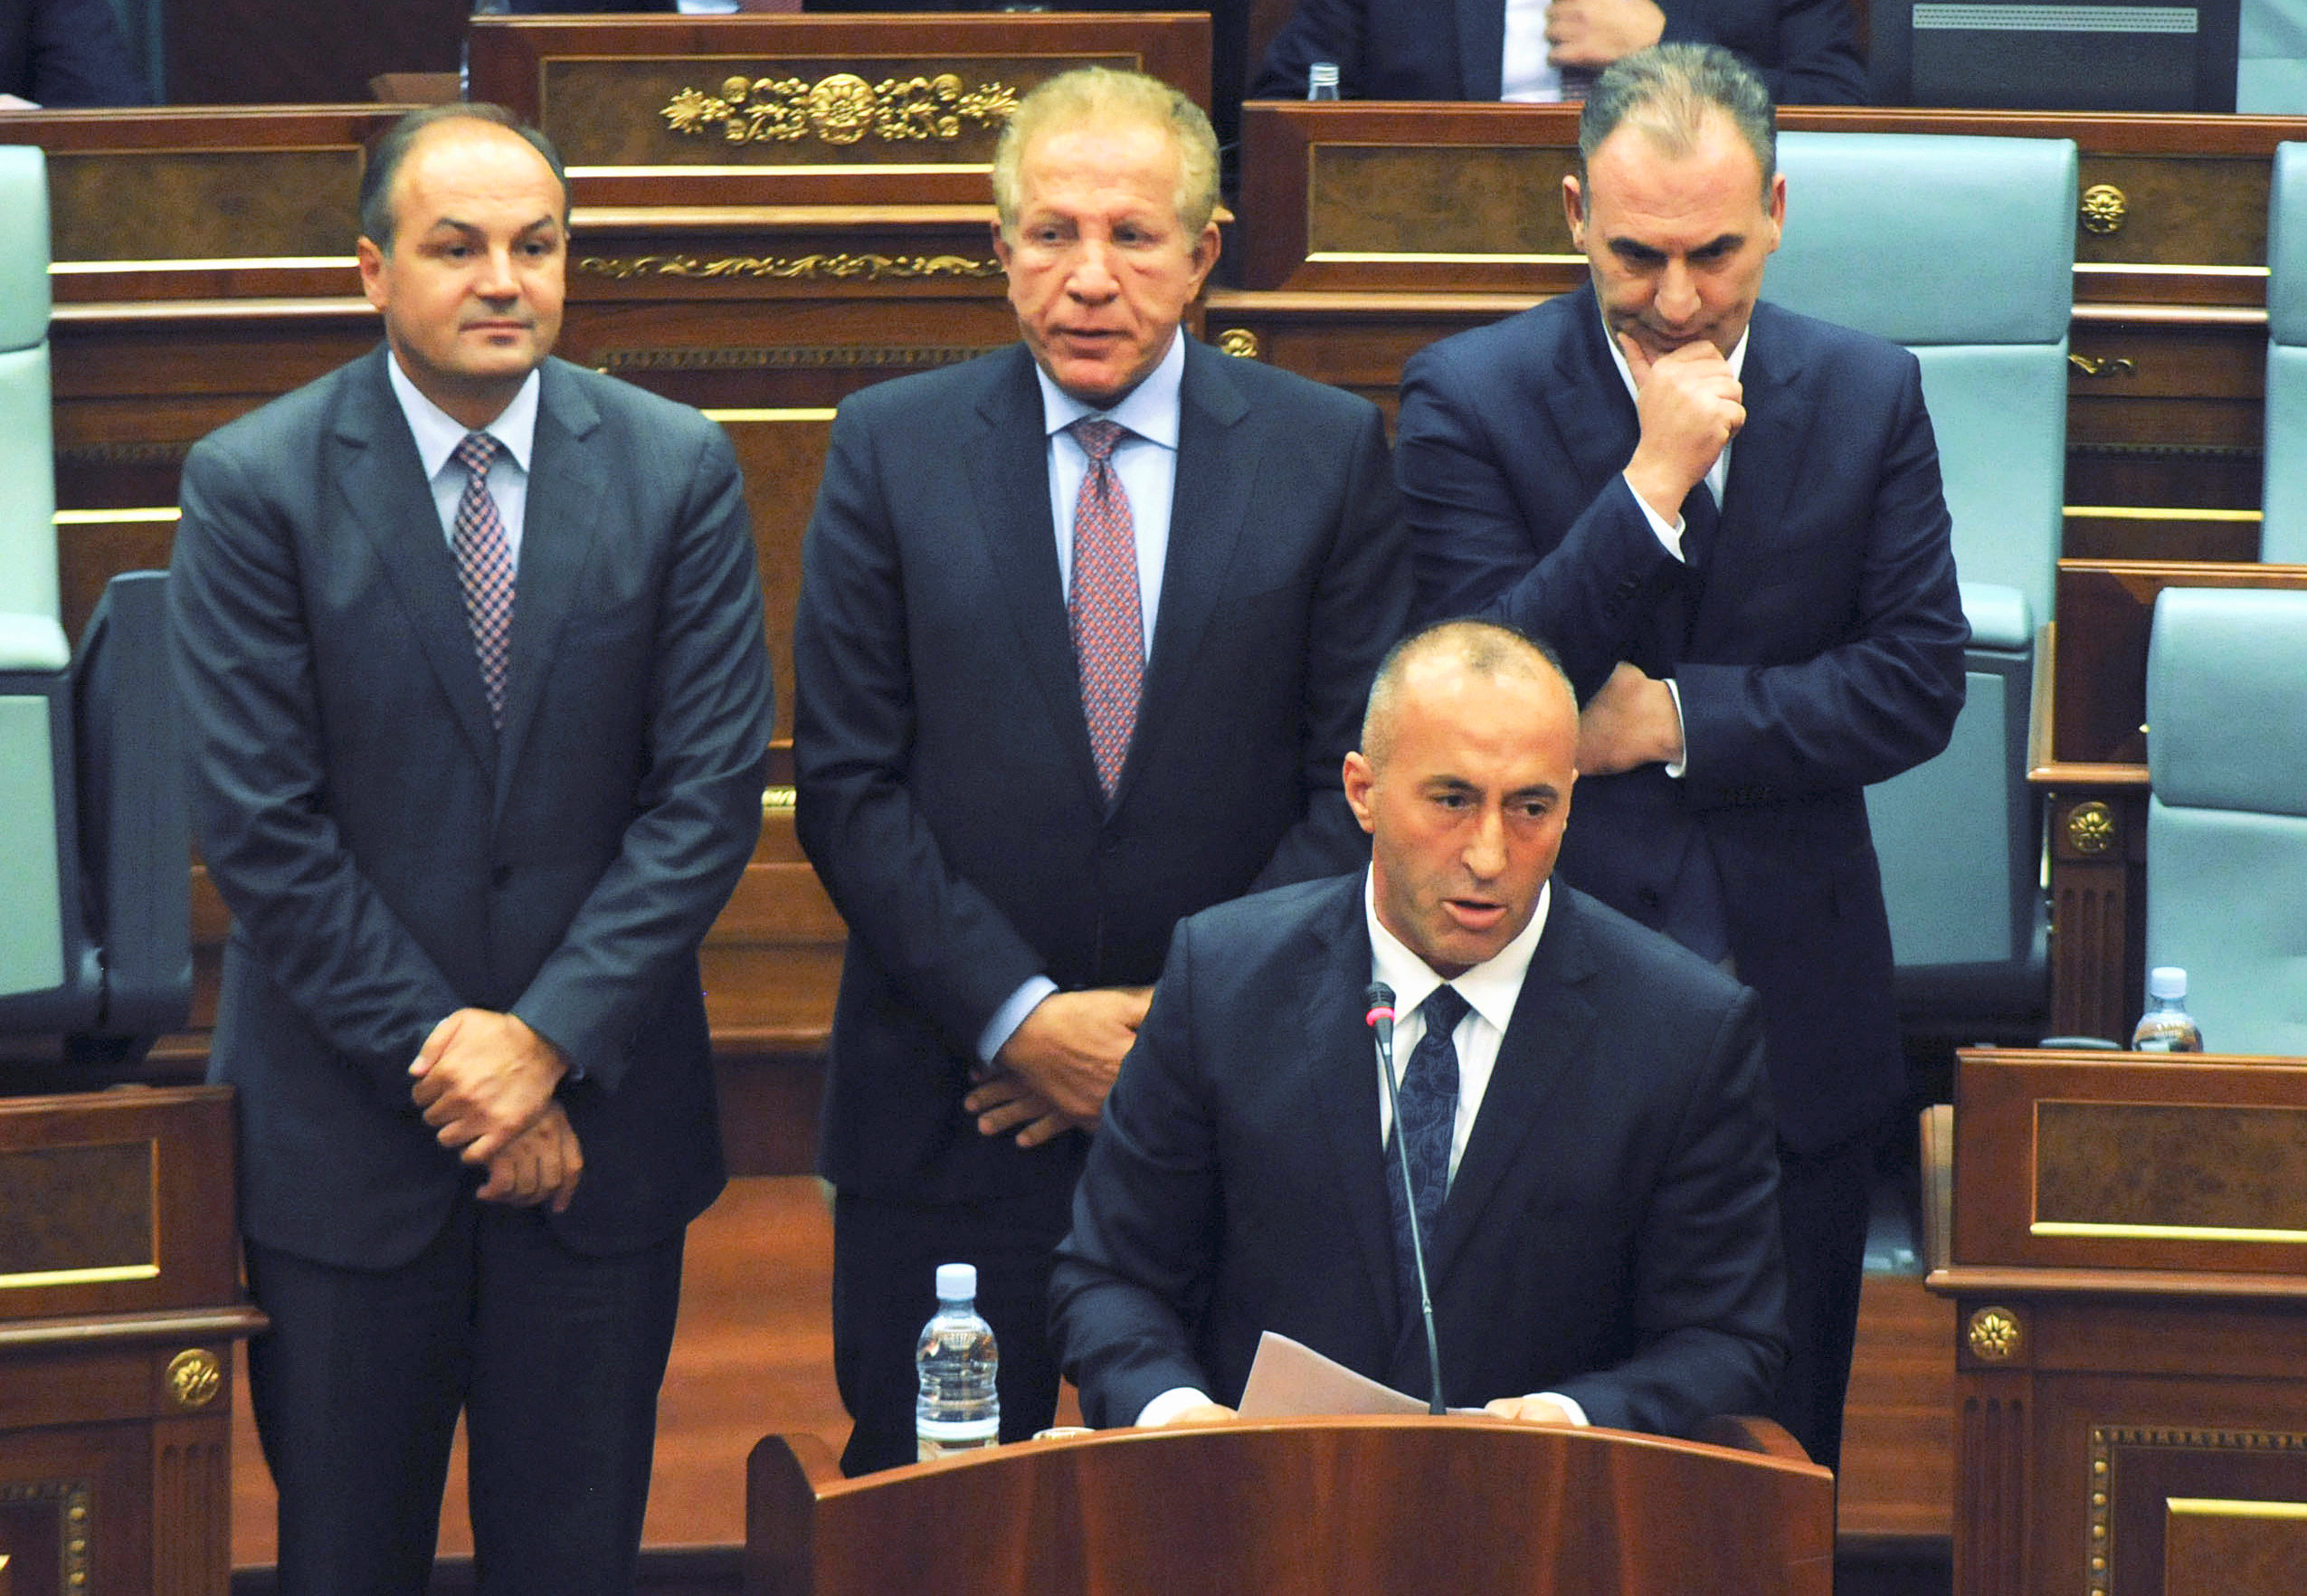 راموش هاراديناج رئيس وزراء كوسوفو المنتخب حديثا فى البرلمان